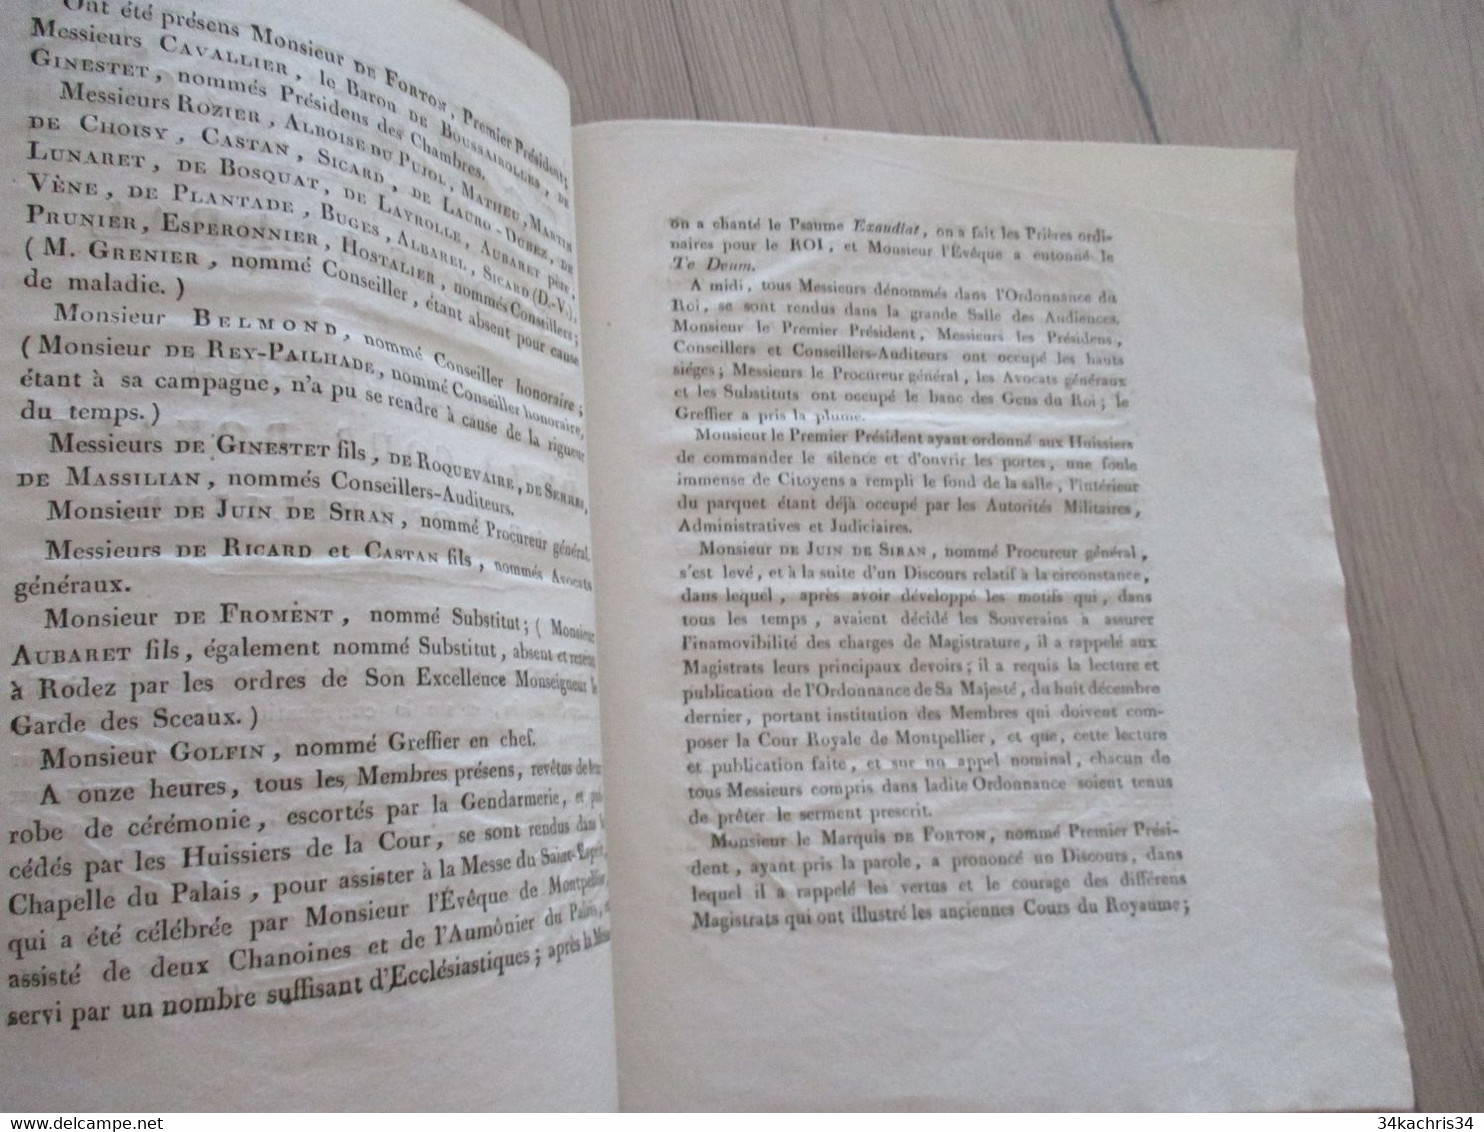 1819 Procès Verbal De L'installation De La Cour Royale De Montpellier 5p De Textes - Décrets & Lois